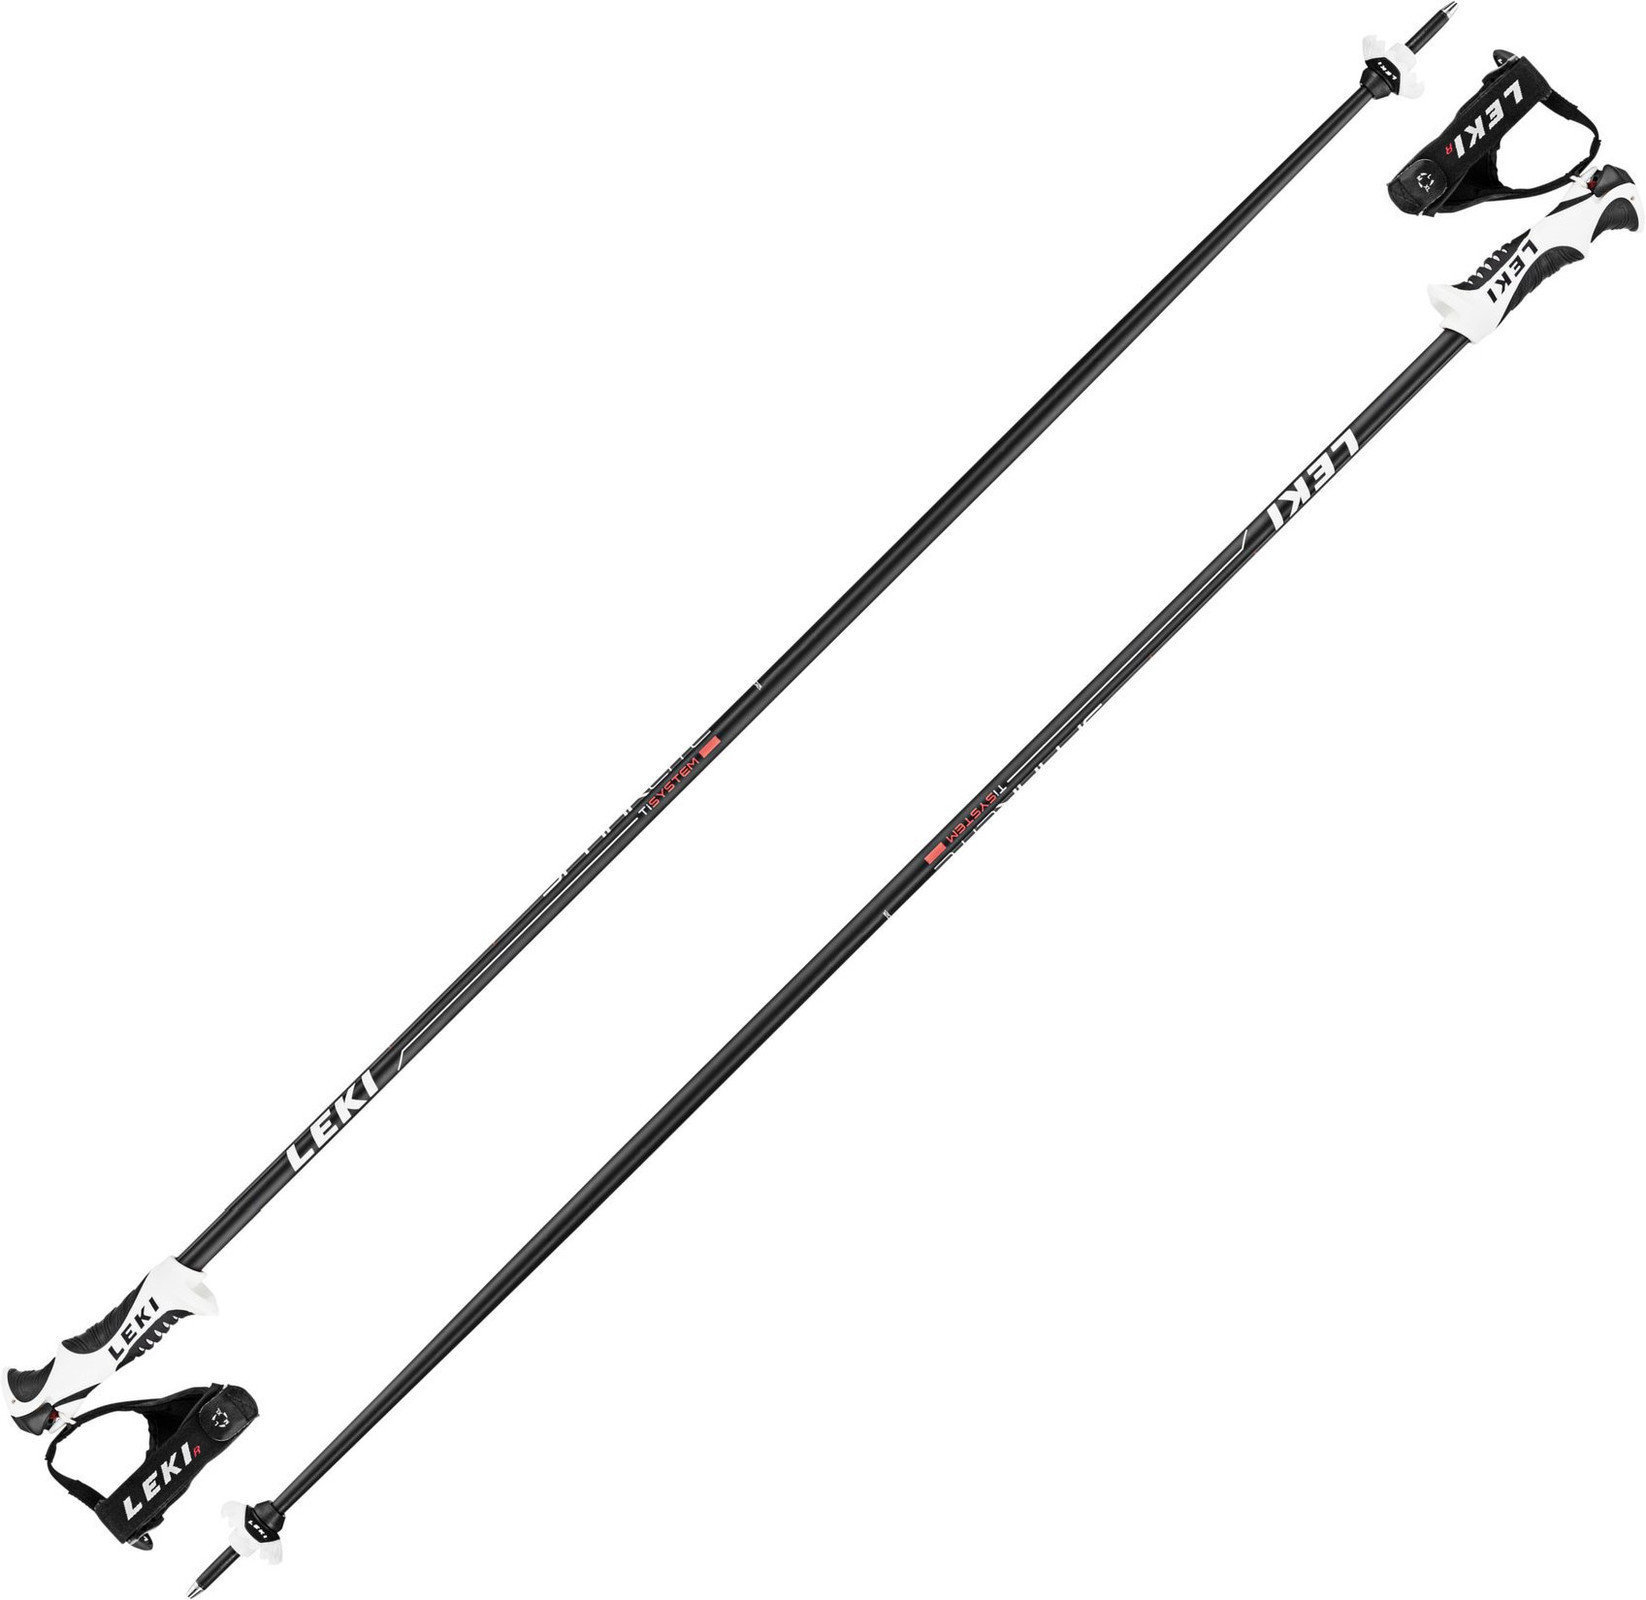 Ski Poles Leki Spark Lite S Black/Light-Anthracite-White-Neonred 125 17/18